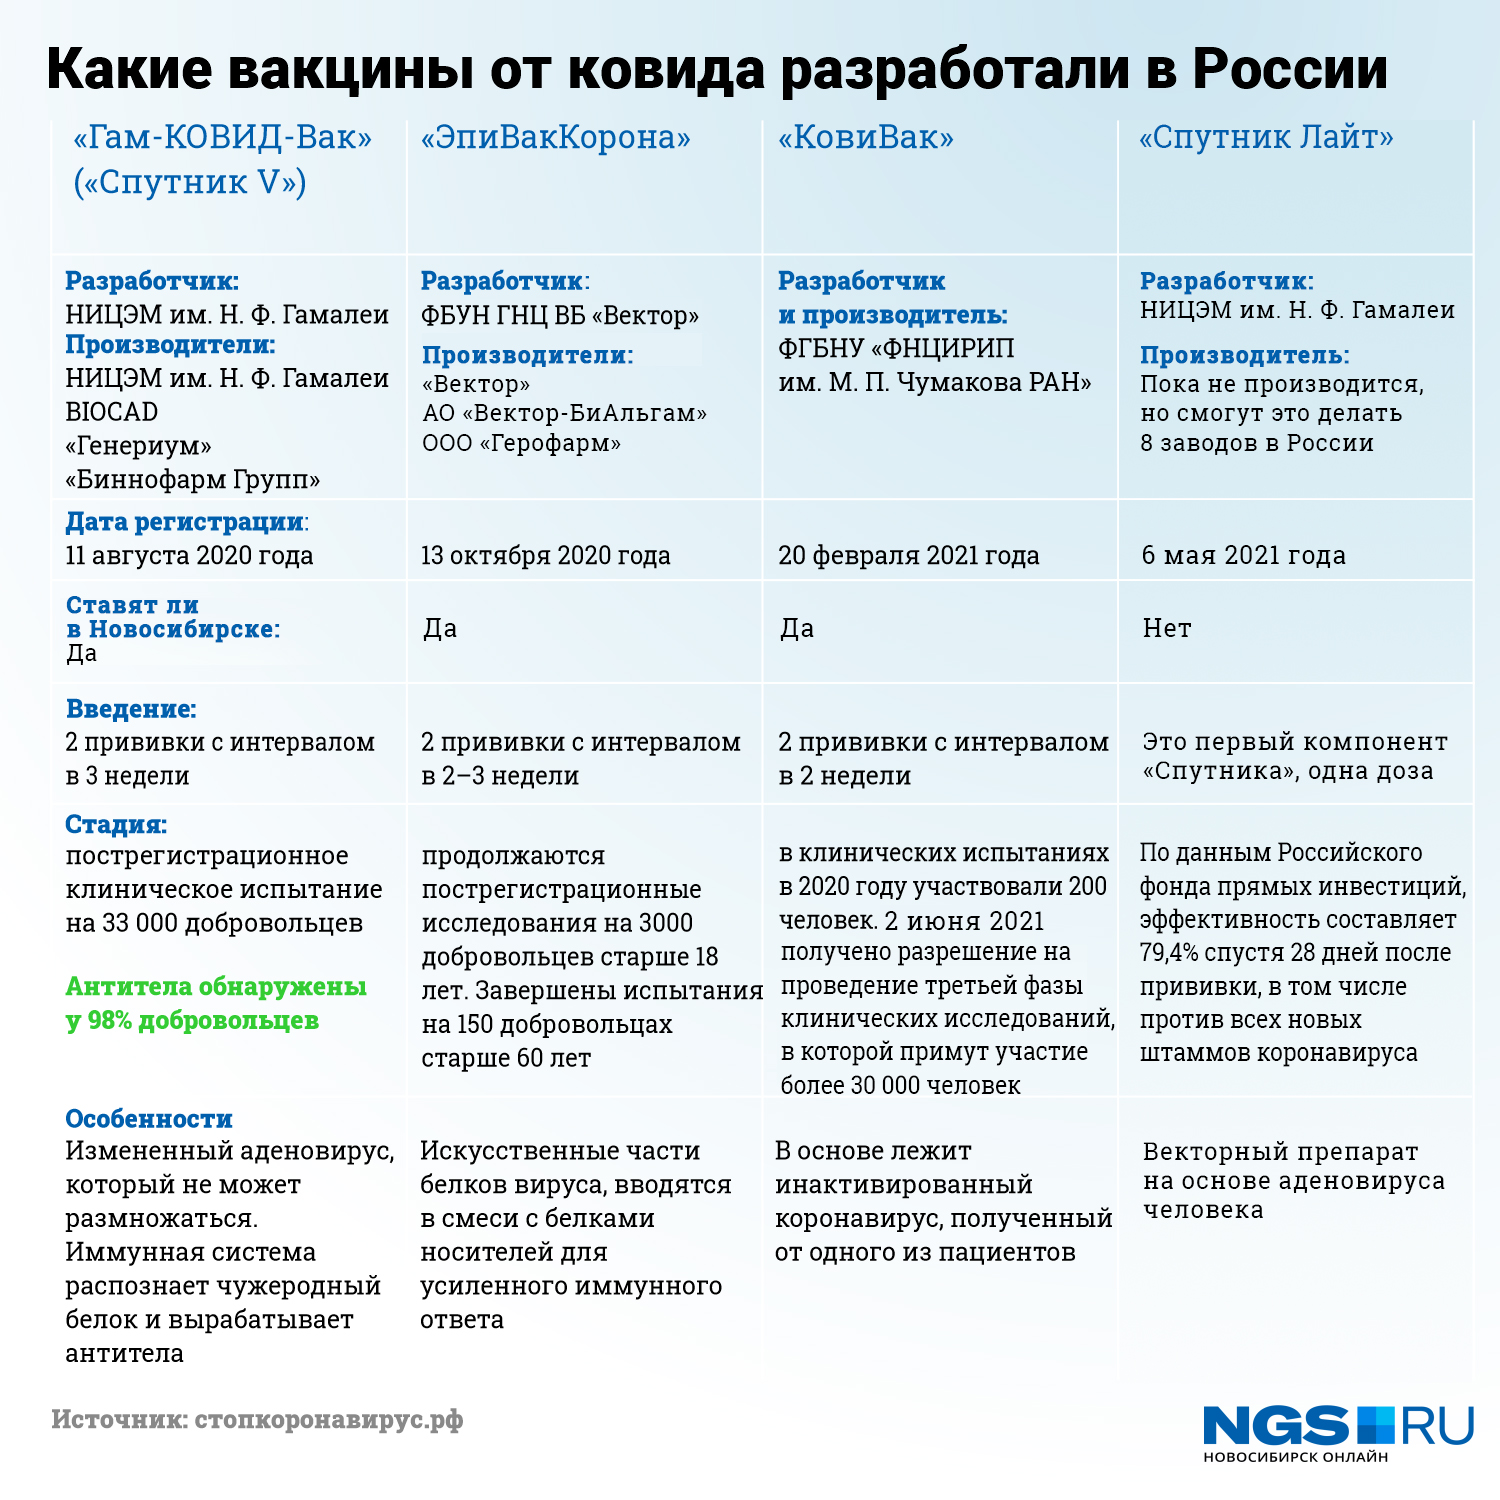 Здесь указаны только те вакцины, которые уже зарегистрированы в России